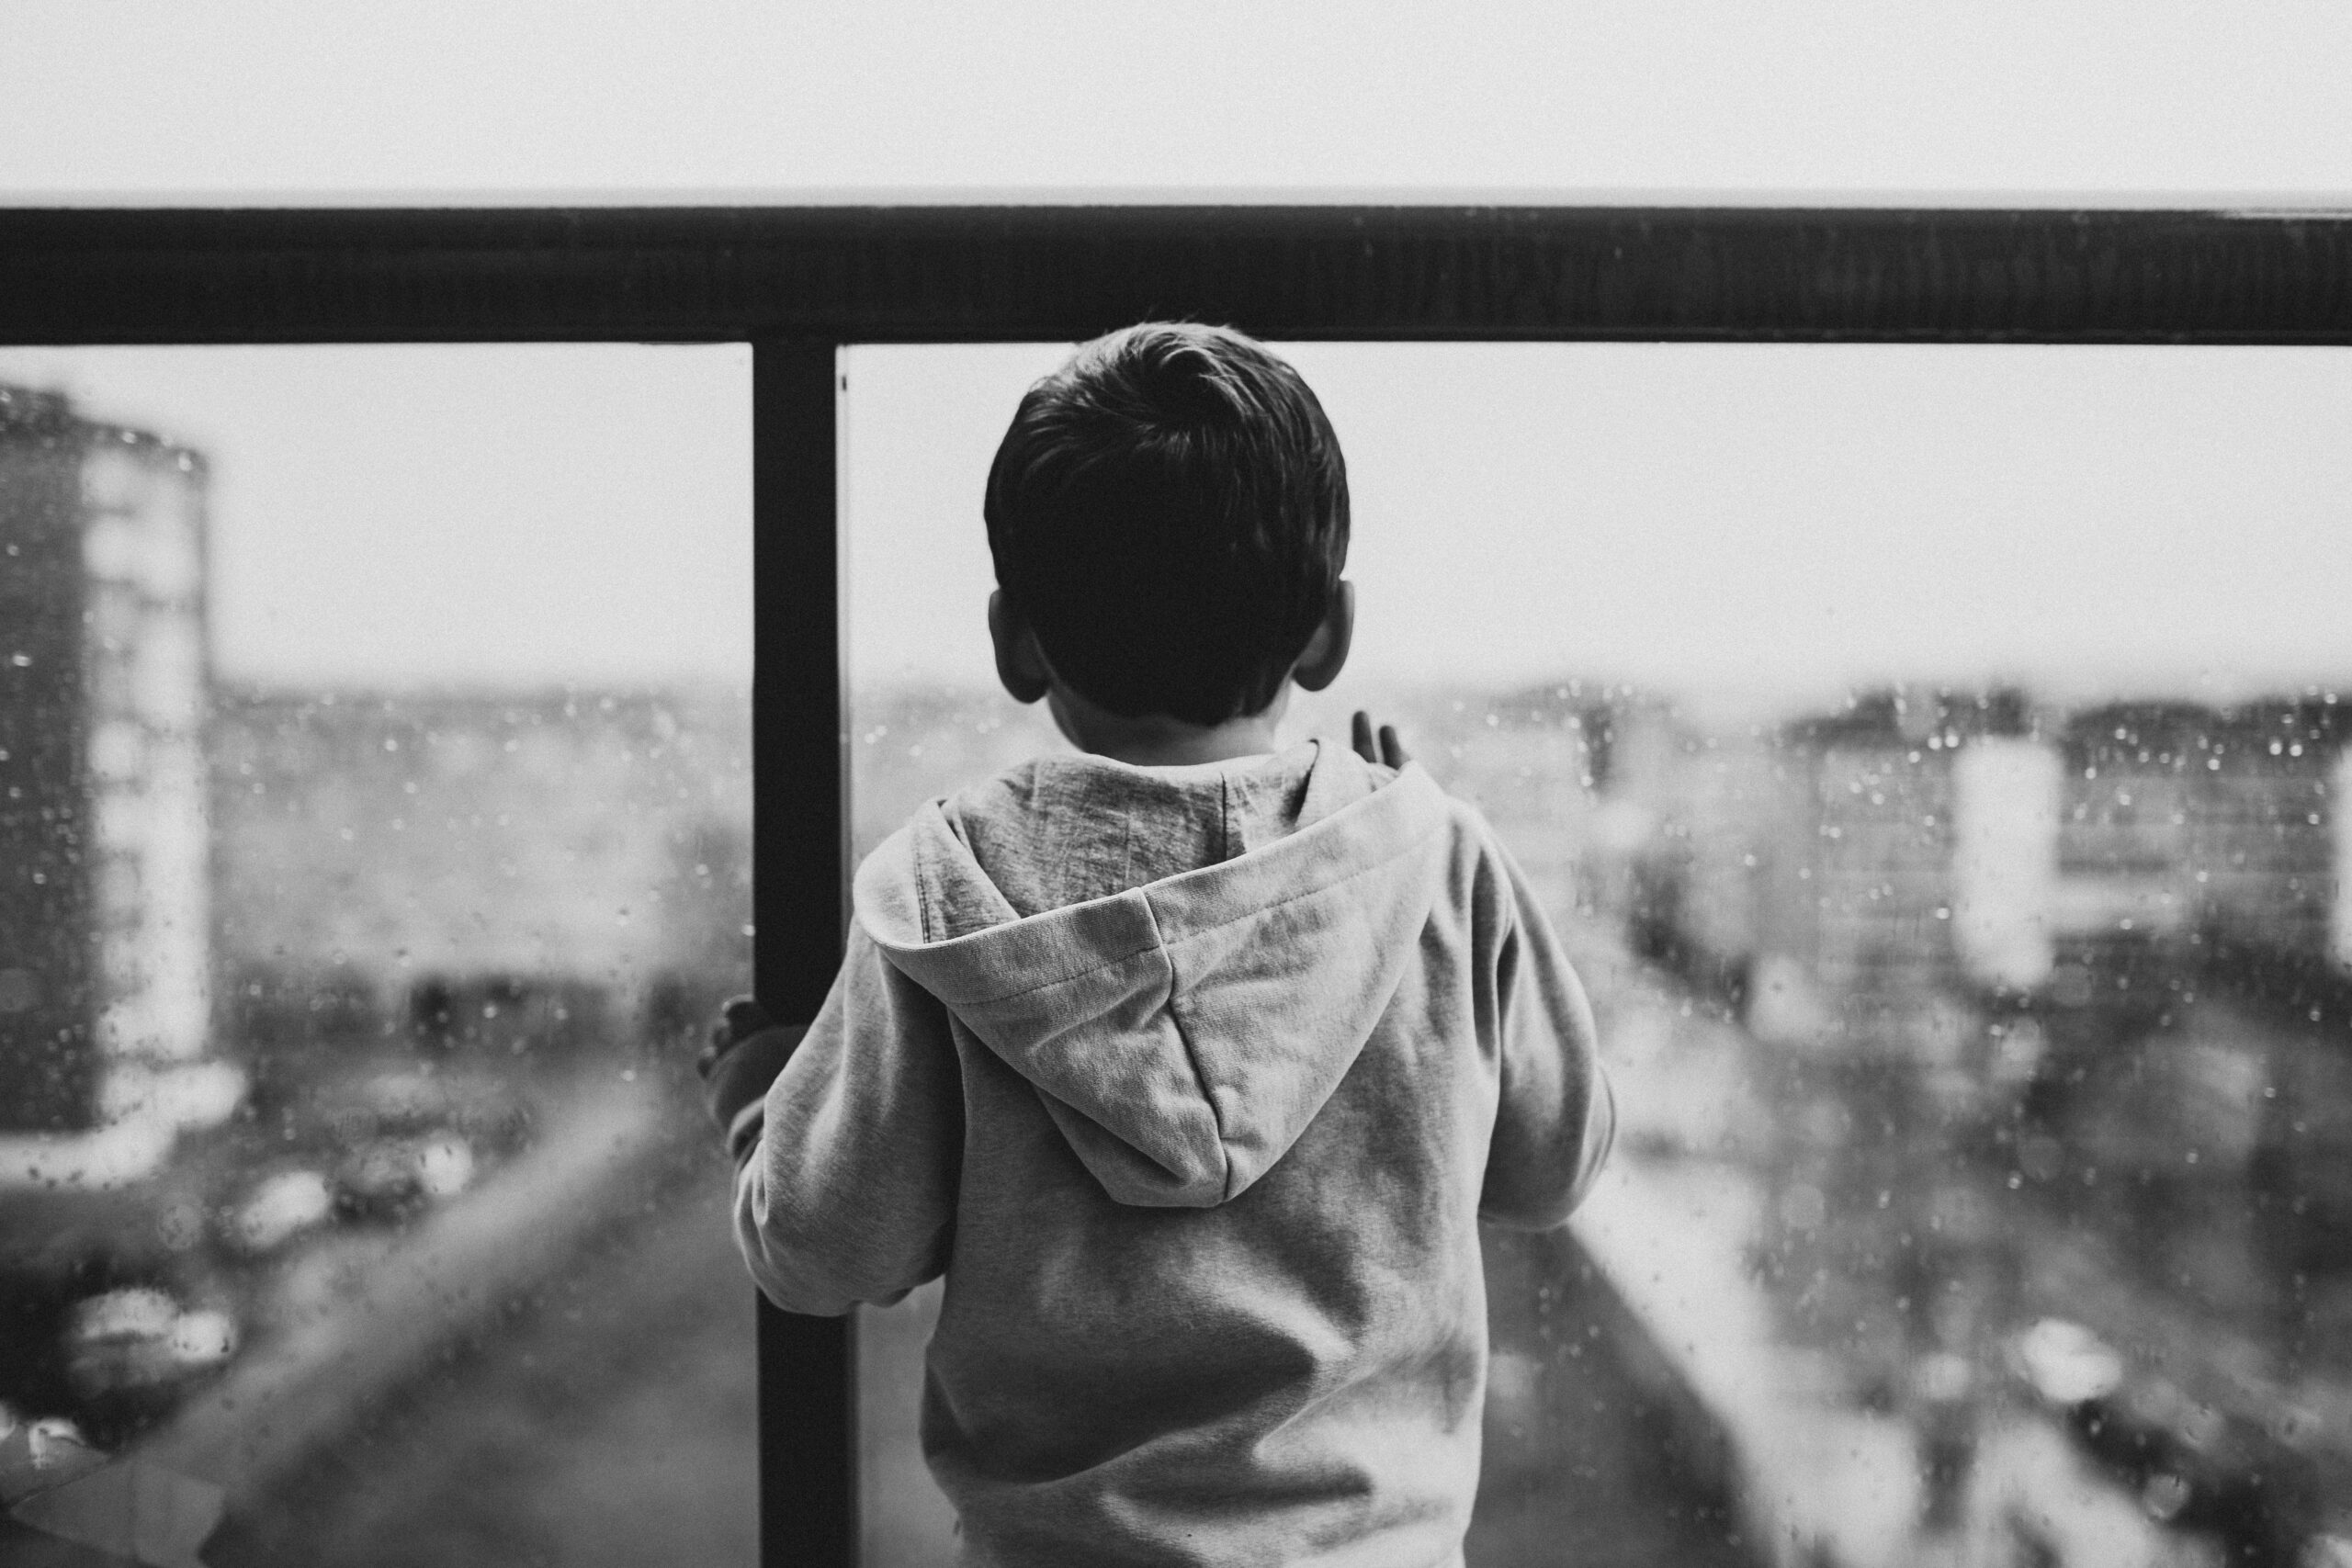 Rückansicht eines traurigen Kindes, das durch eine gläserne Balkonbrüstung auf eine Stadt guckt. Foto von Juan Pablo Serrano Arenas: https://www.pexels.com/de-de/foto/ruckansicht-eines-traurigen-kindes-das-auf-ein-glasfenster-wartet-827993/